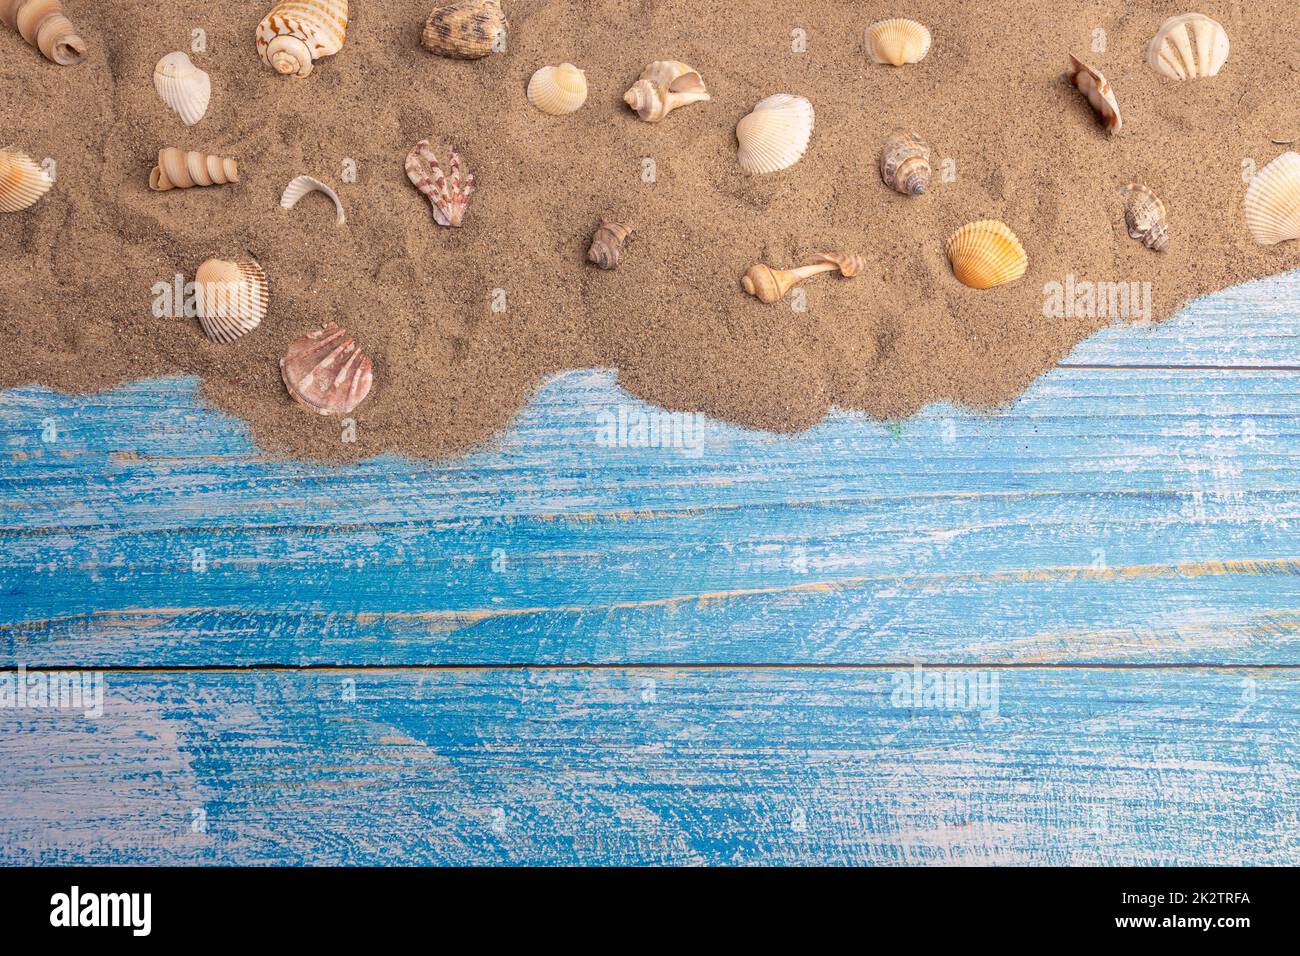 Conchas marinas en la arena sobre un fondo azul Foto de stock